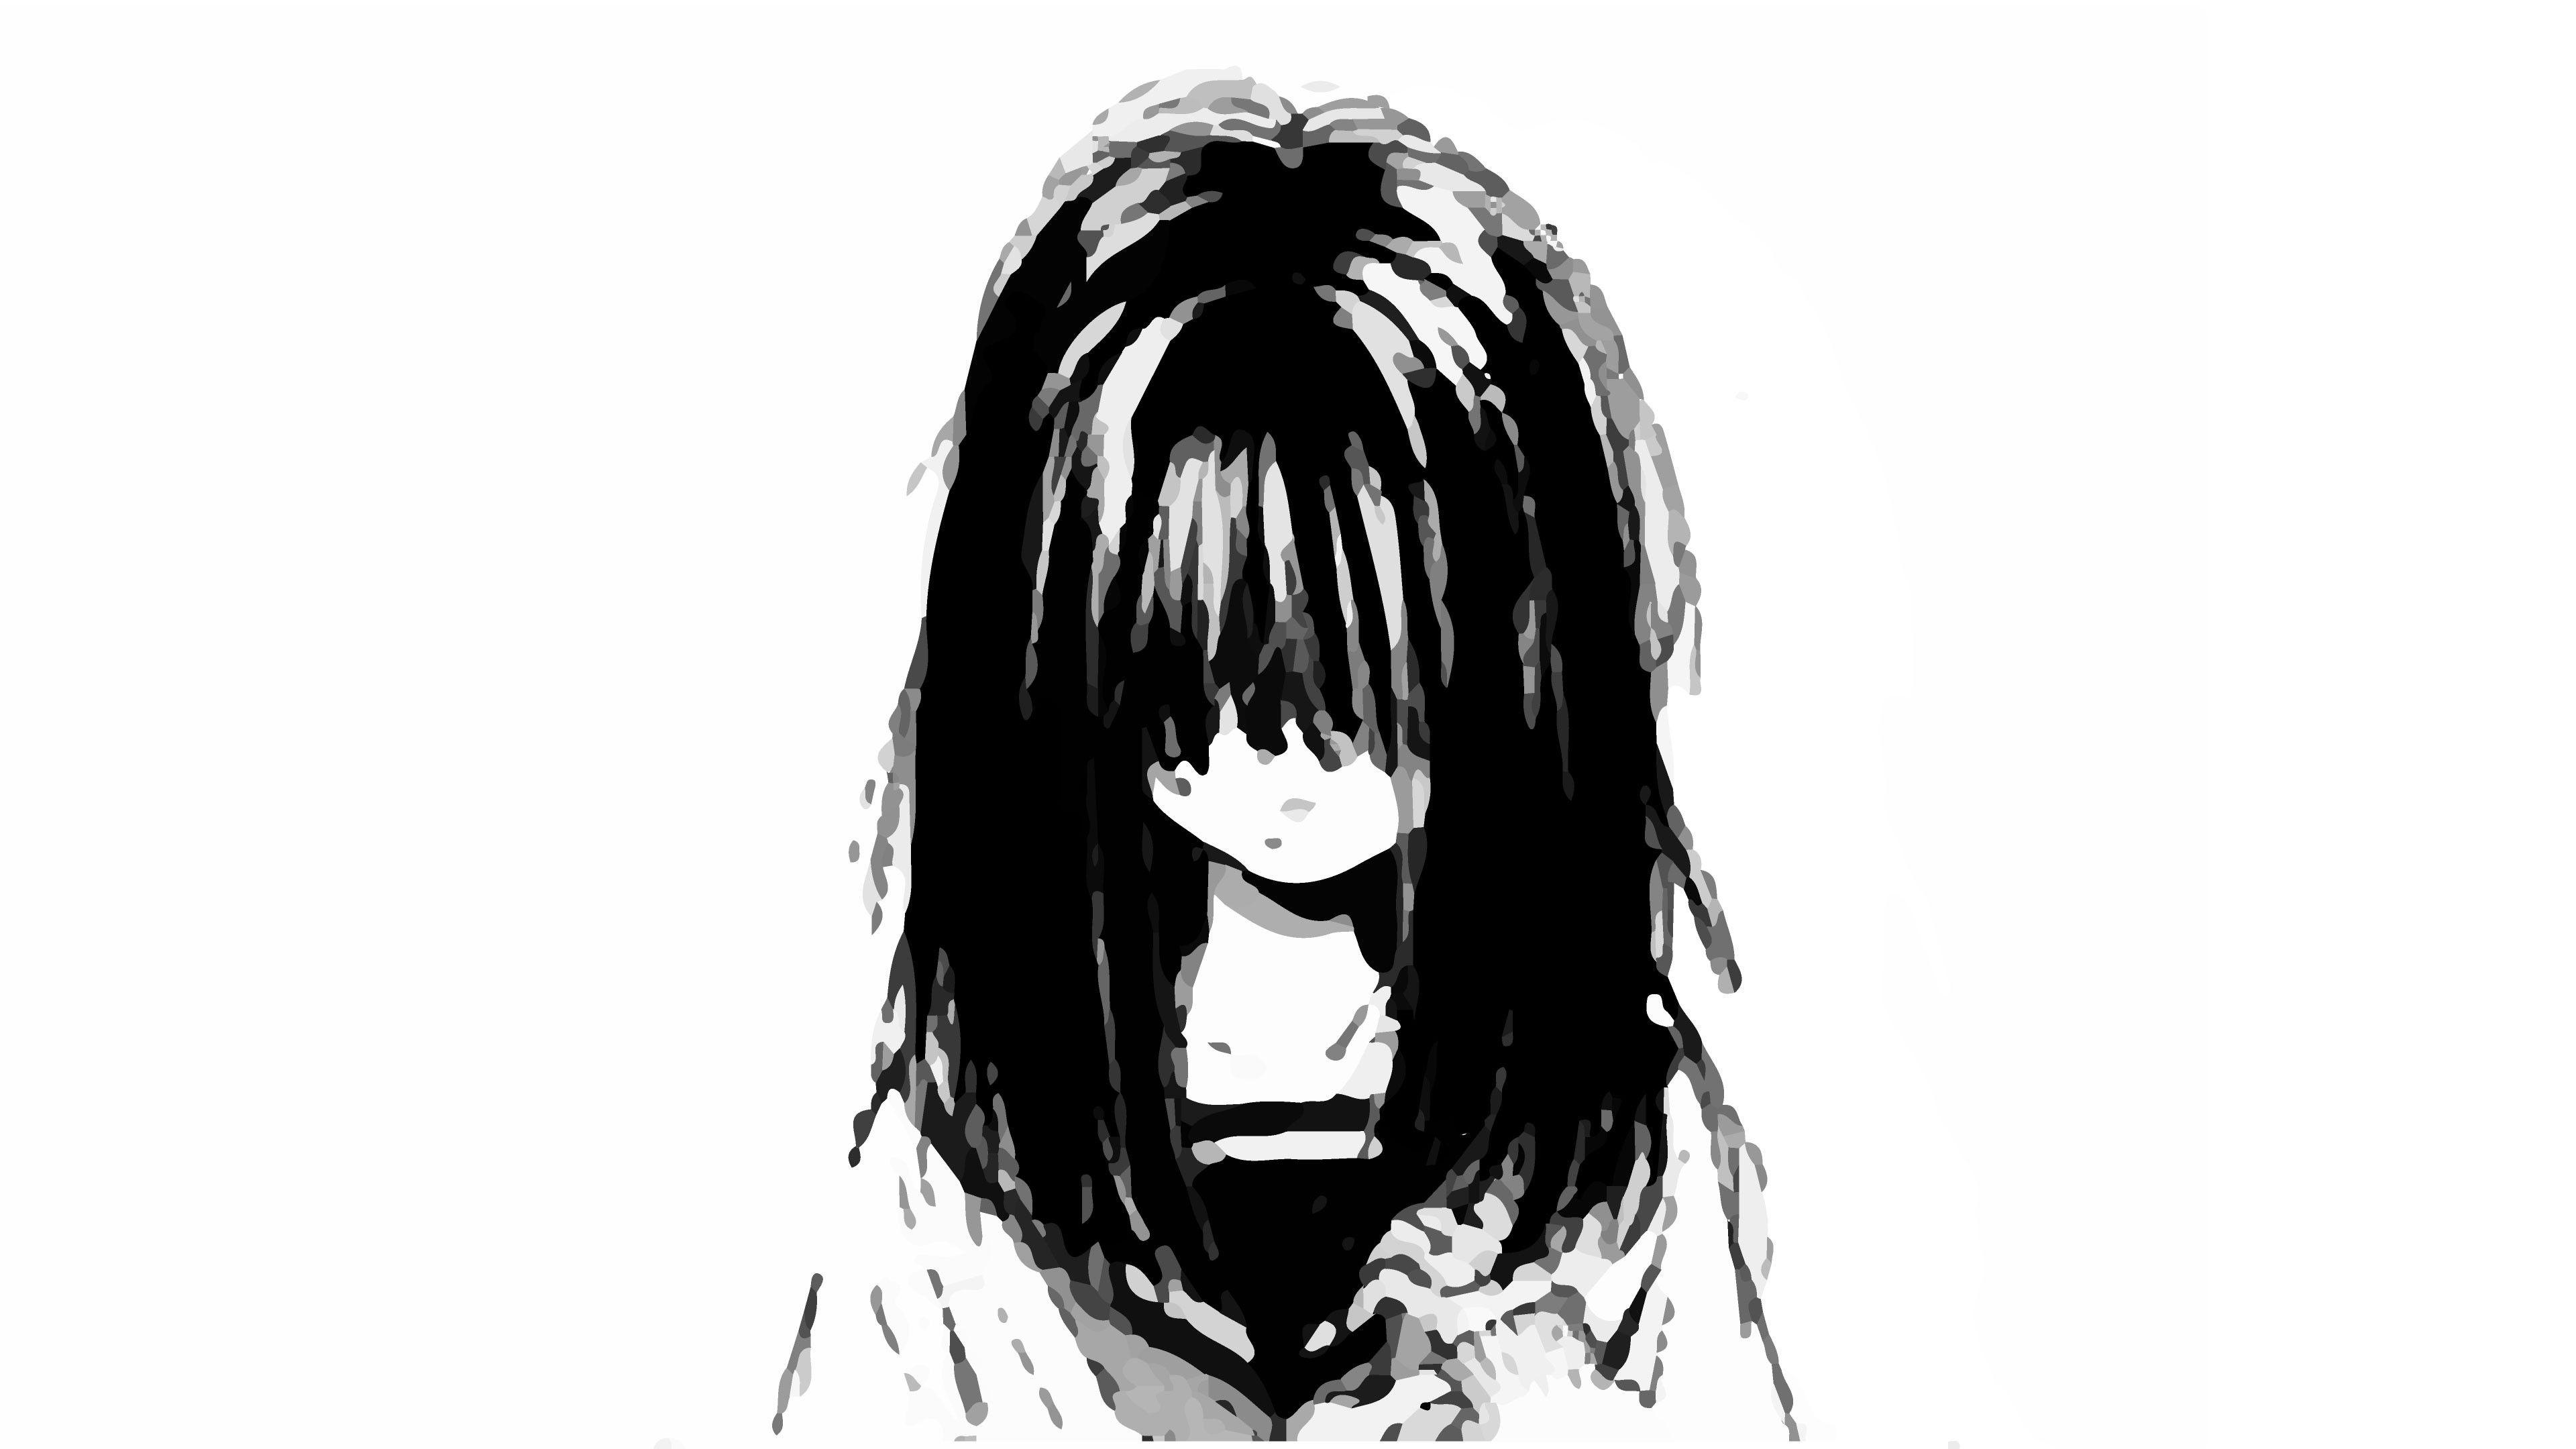 61+ Anime Girl Sad Black And White